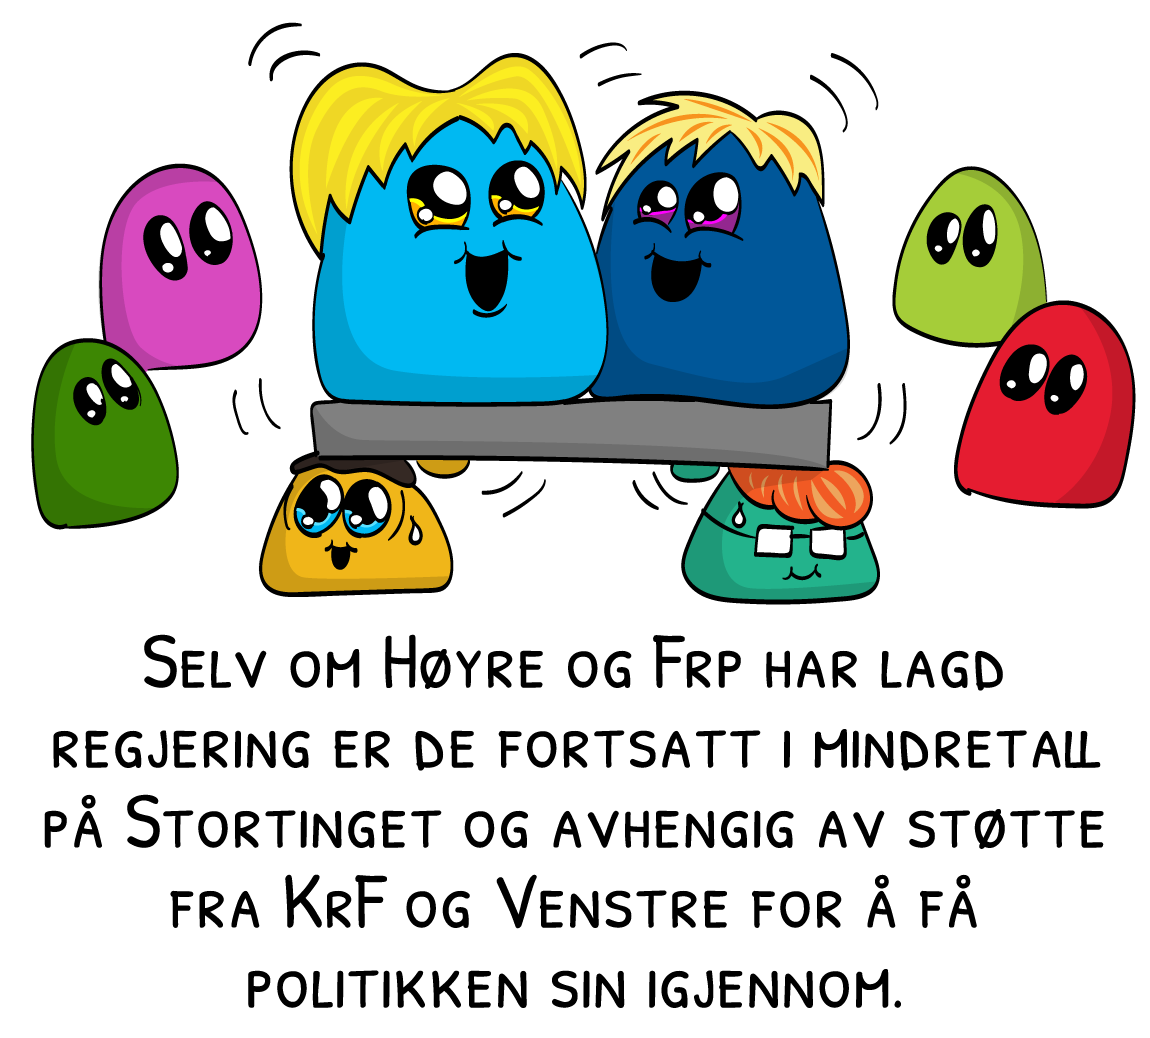 Selv om Høyre og Frp har lagd regjering er de fortsatt i mindretall på Stortinget og avhengig av støtte fra KrF og Venstre for å få politikken sin igjennom